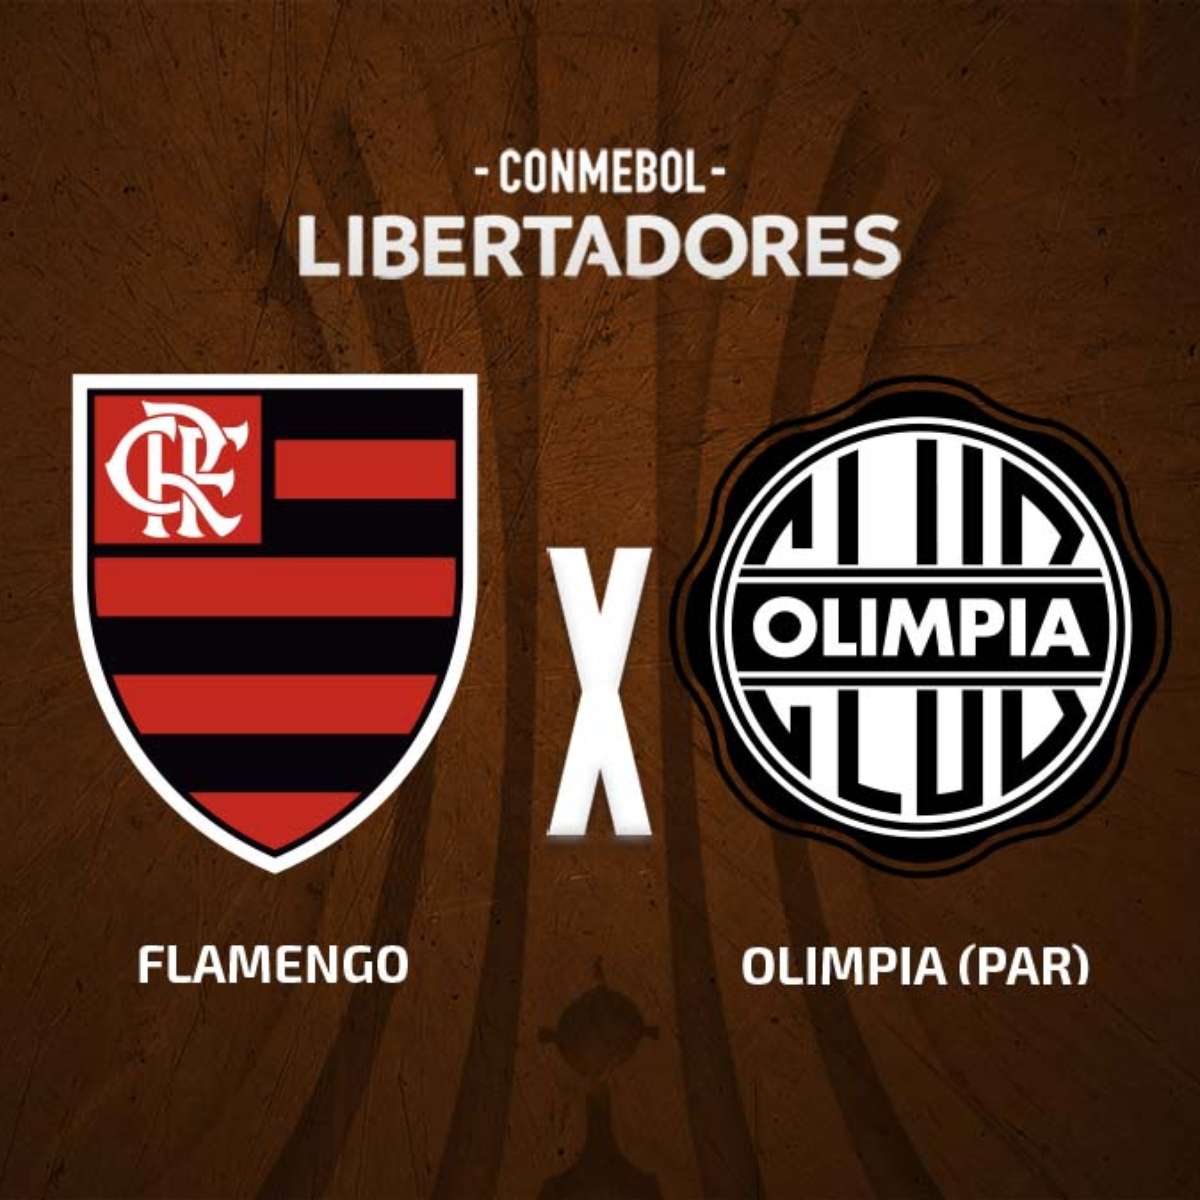 Confira como foi a transmissão da Jovem Pan do jogo entre Olimpia e Flamengo